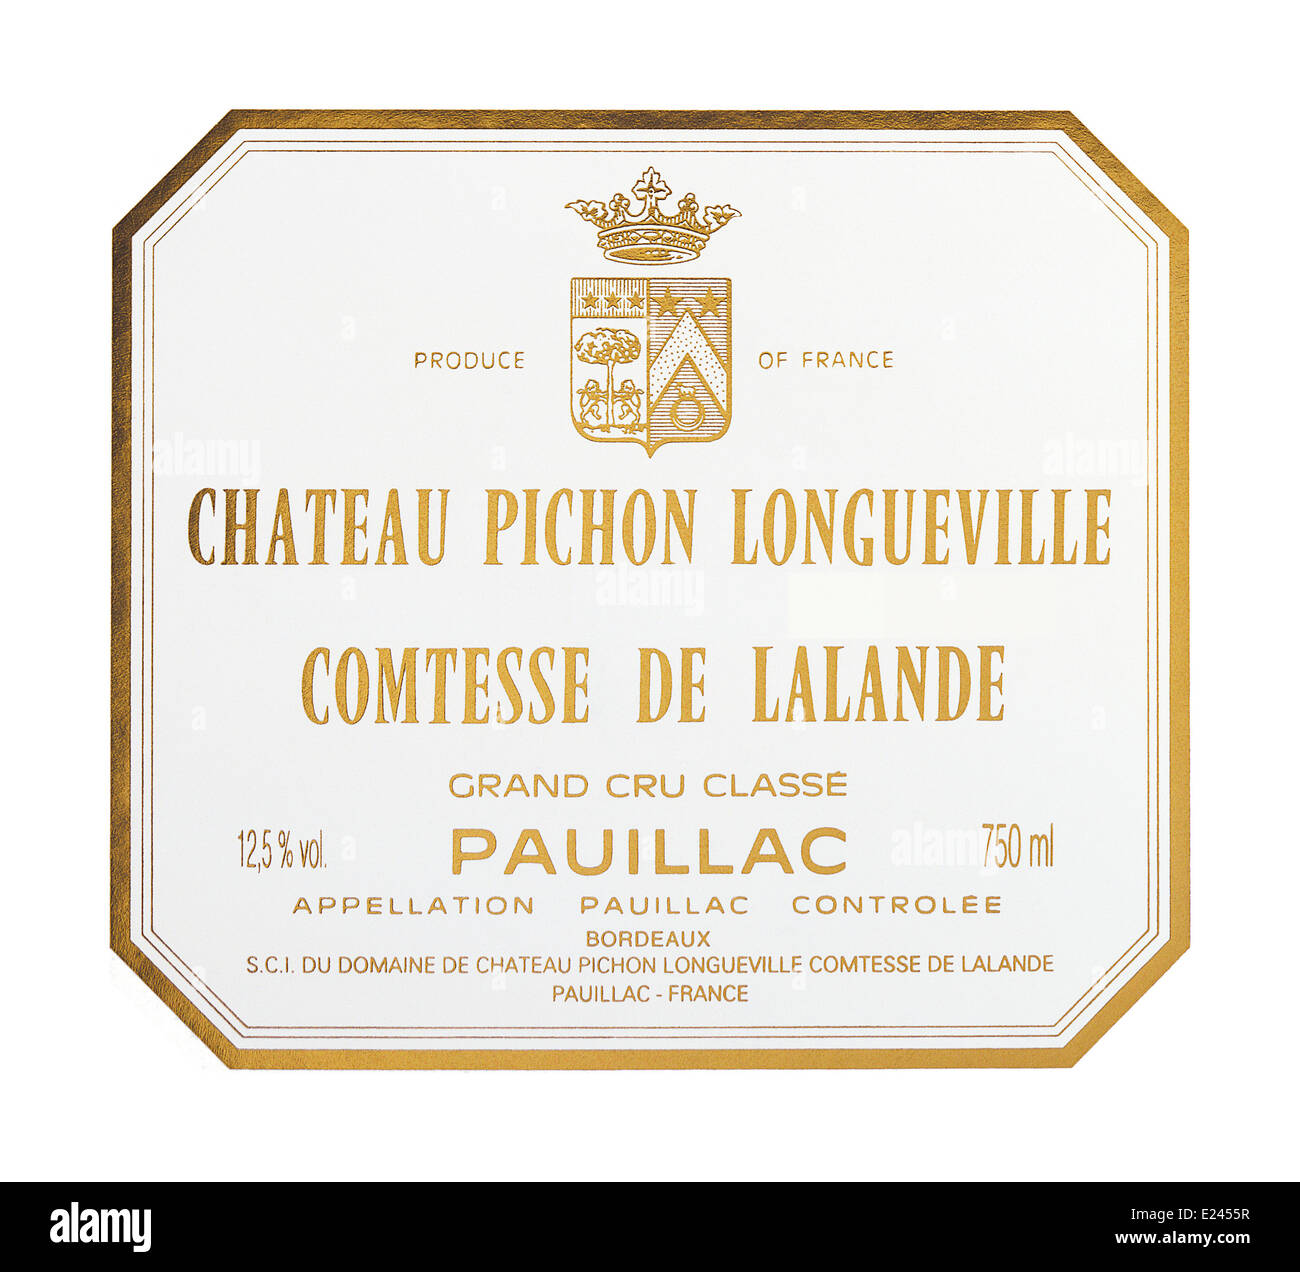 Chateau Pichon Longueville Comtesse de Lalande Grand cru classe Pauillac vino rosso etichetta Foto Stock